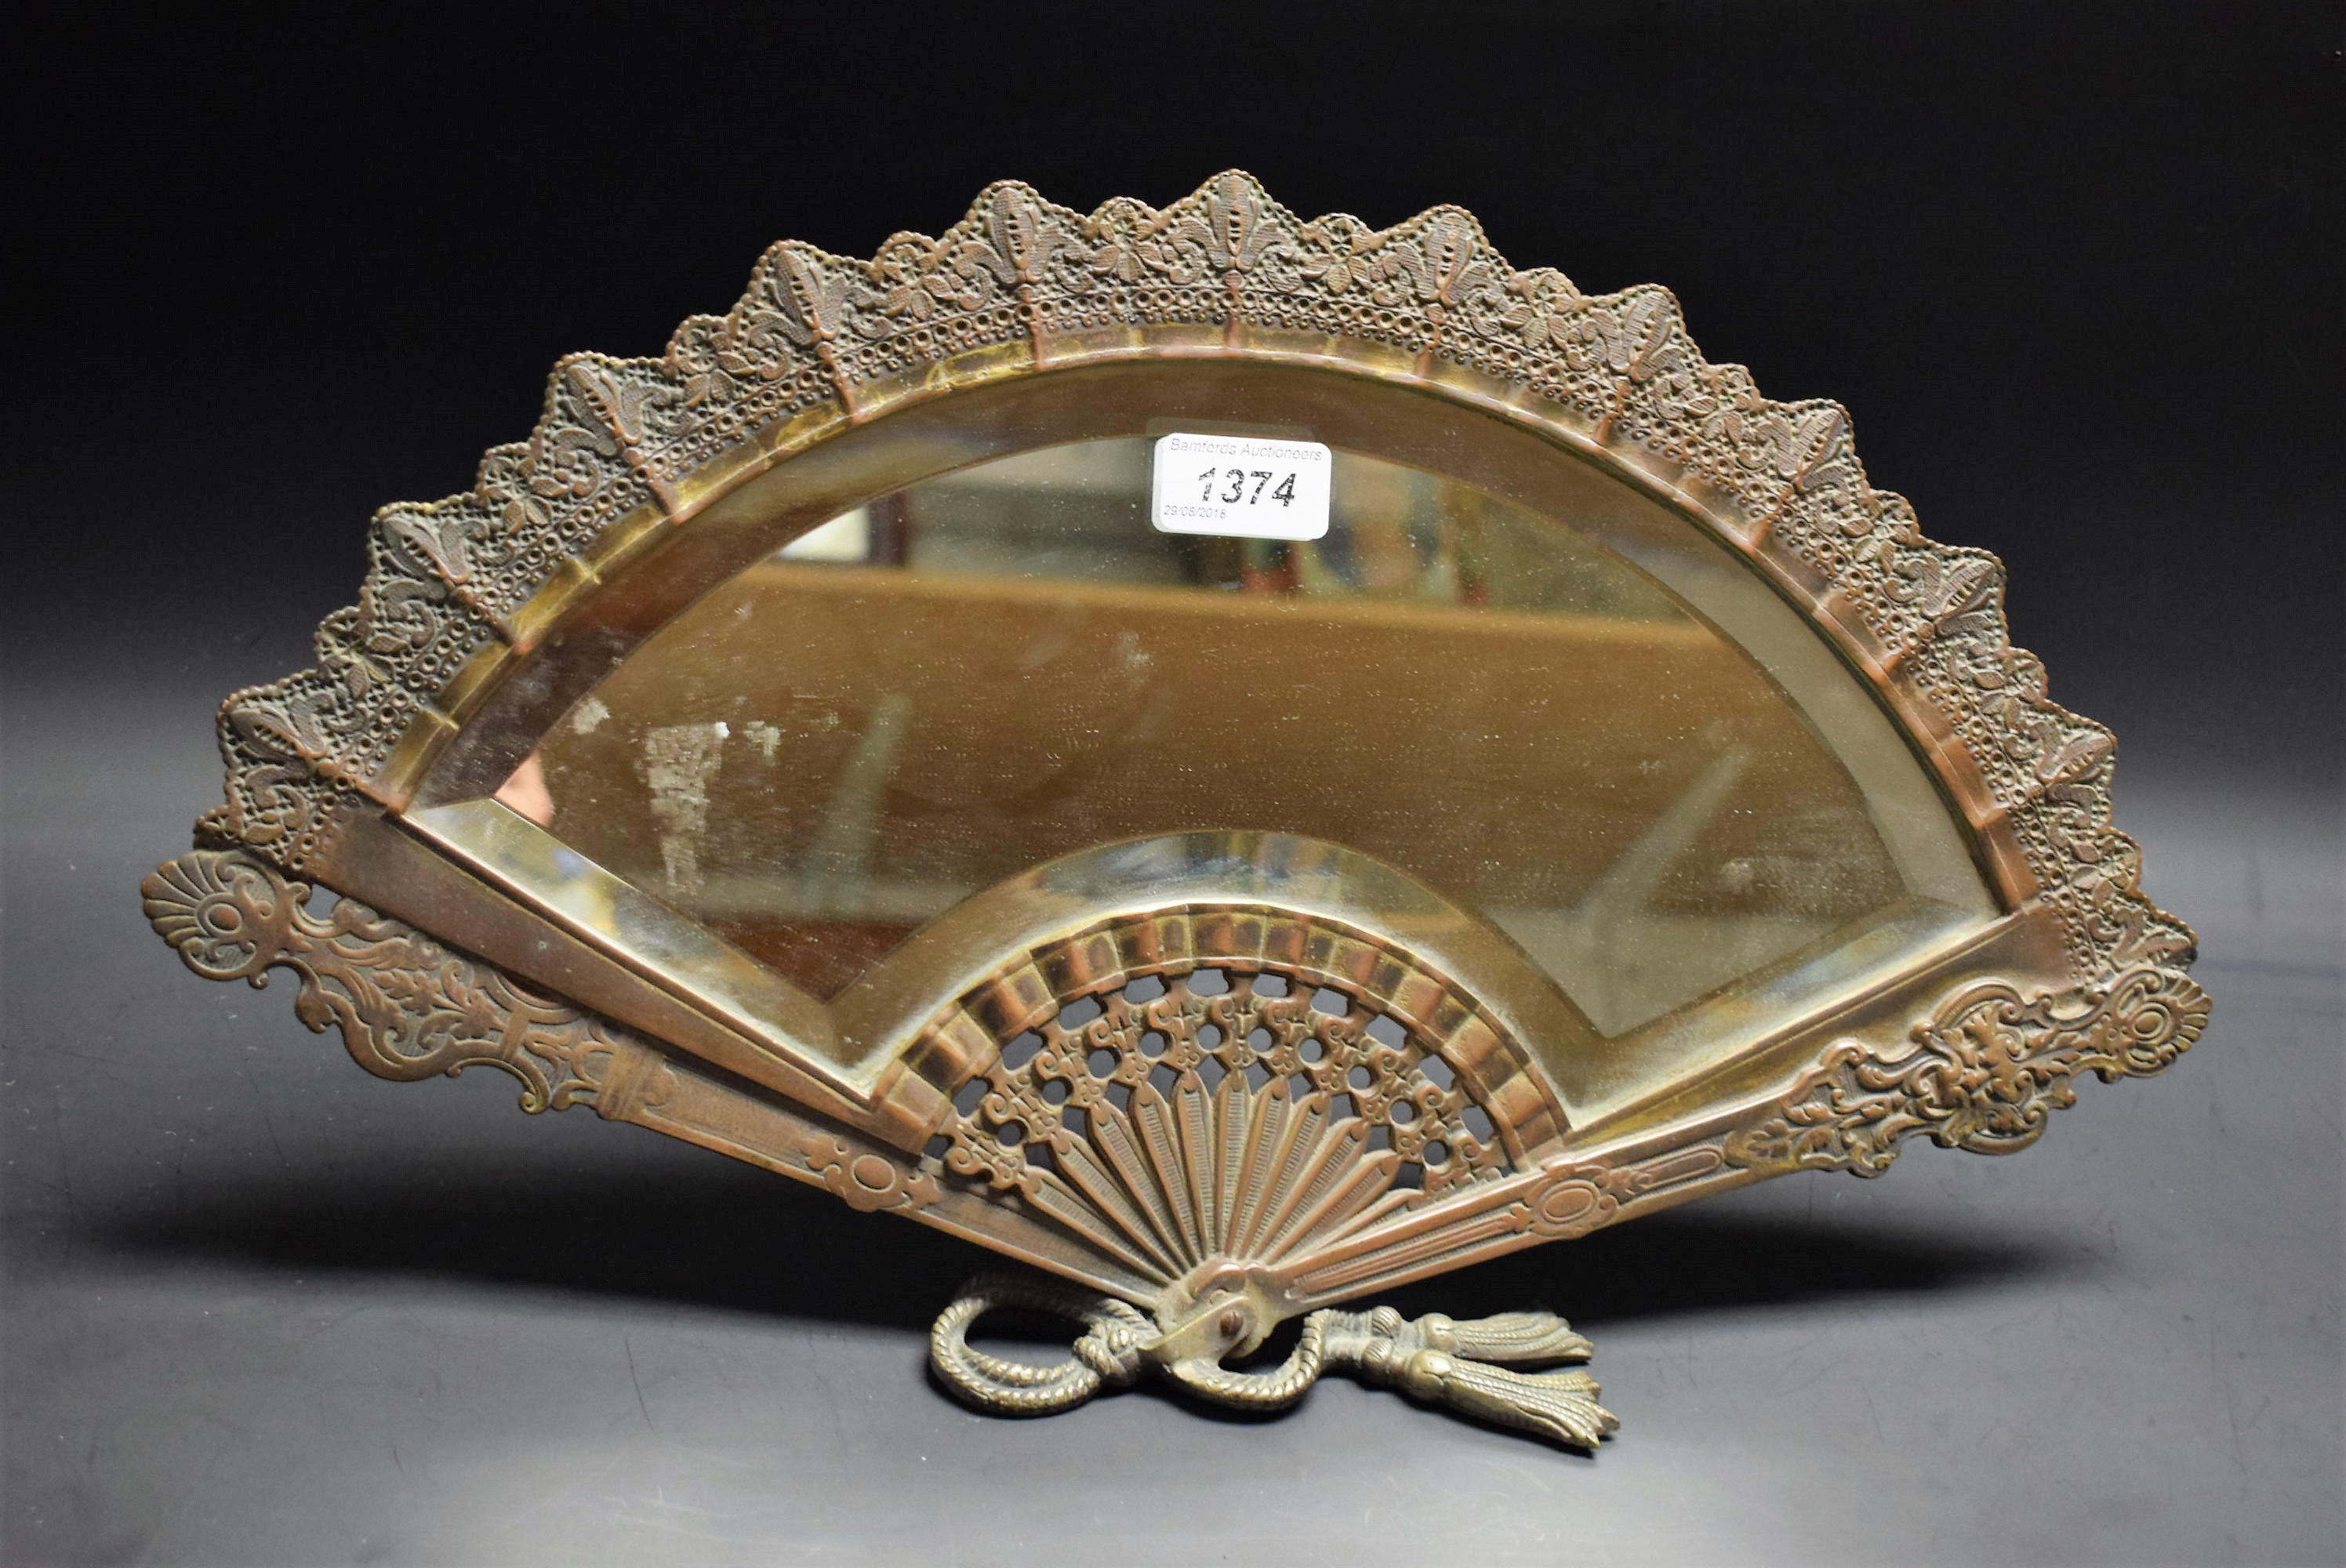 A brass fan shaped dressing table mirror,